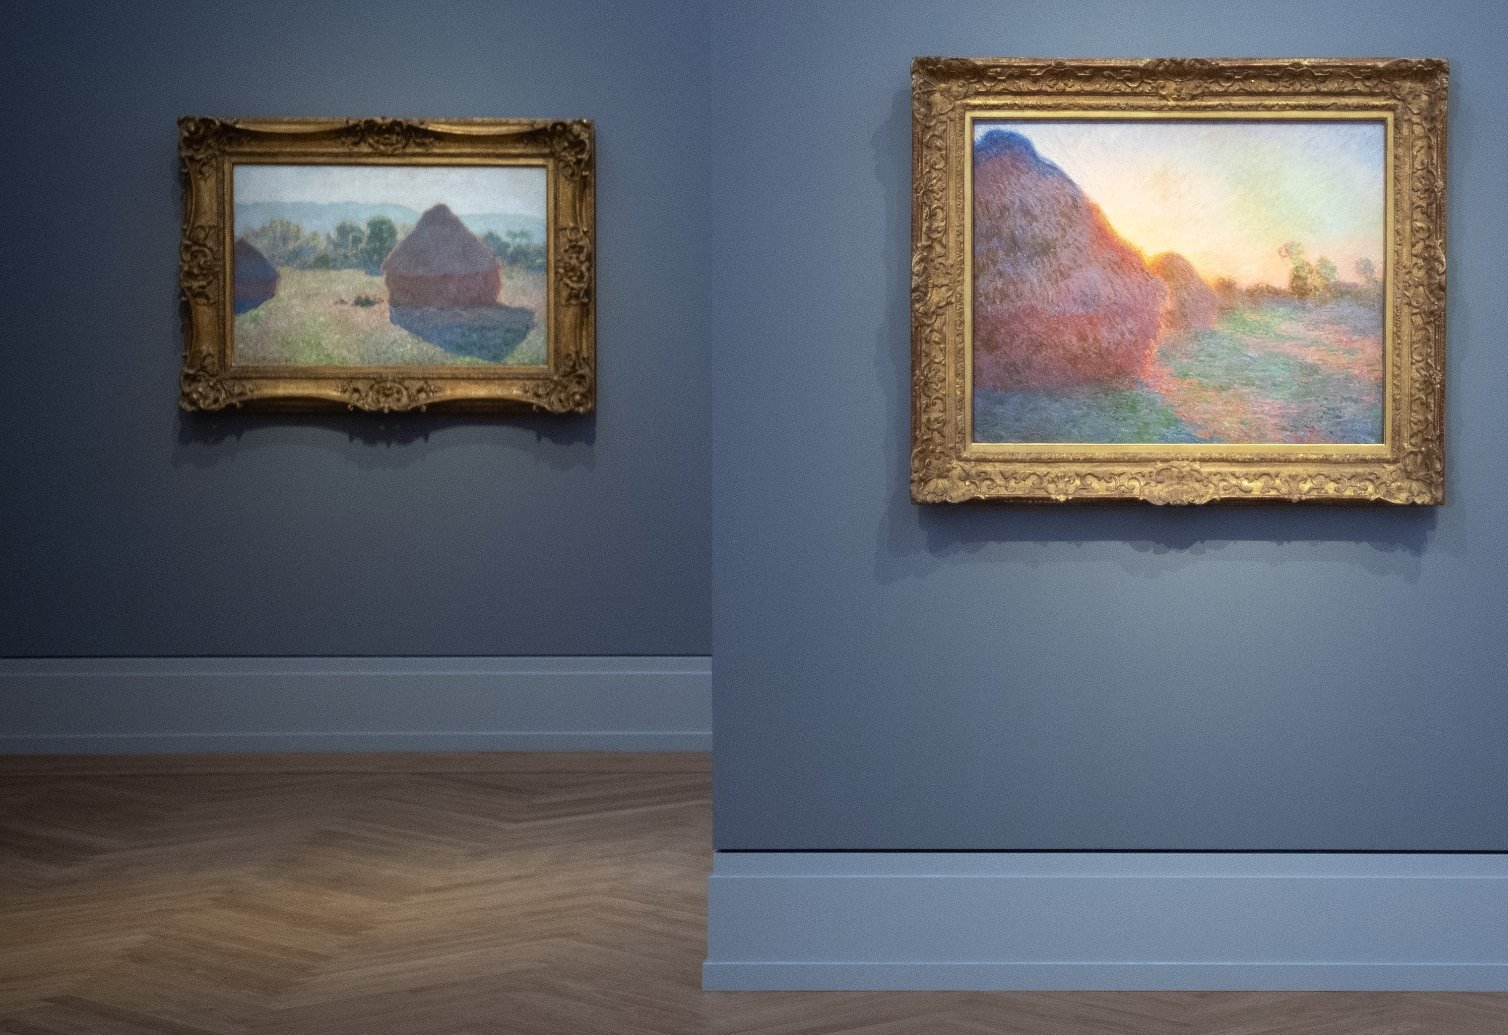 Sebuah karya impresionis Prancis Claude Monet baru-baru ini dipukul dengan pure kentang di museum Barberini Jerman di Potsdam, Jerman, 20 Februari 2020. (Foto dpa)